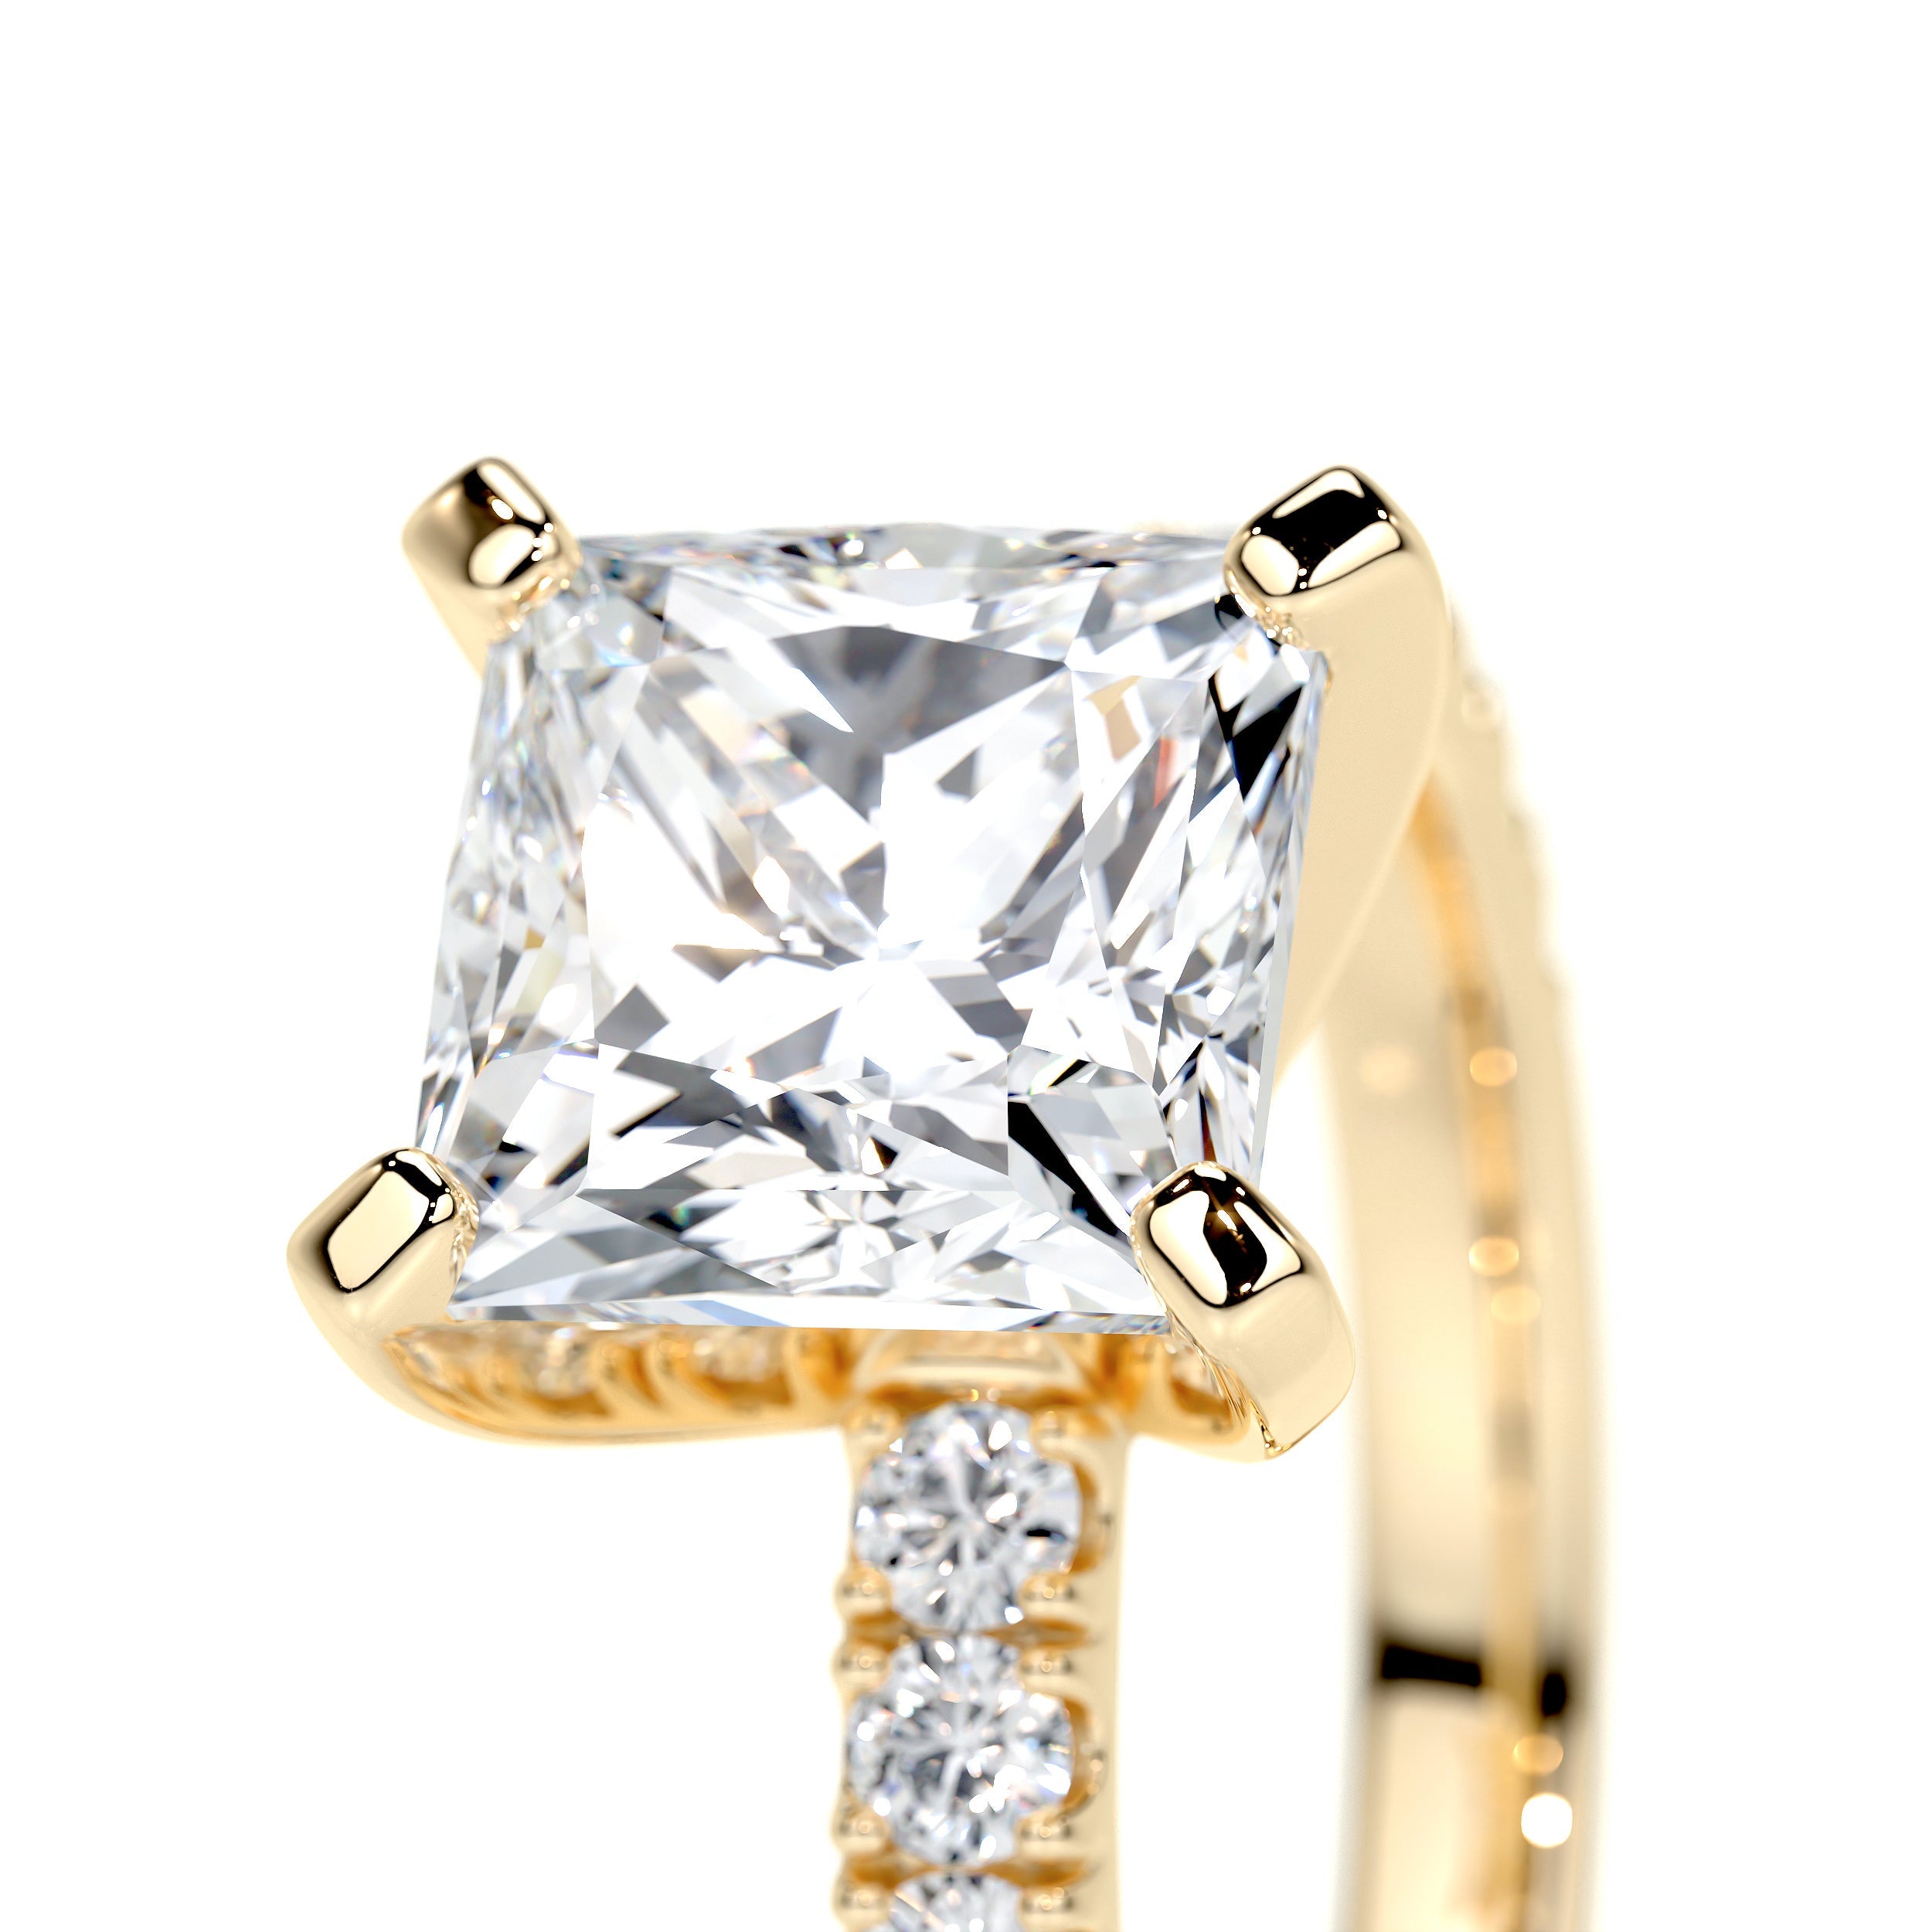 Blair Lab Grown Diamond Ring   (2.5 Carat) -18K Yellow Gold